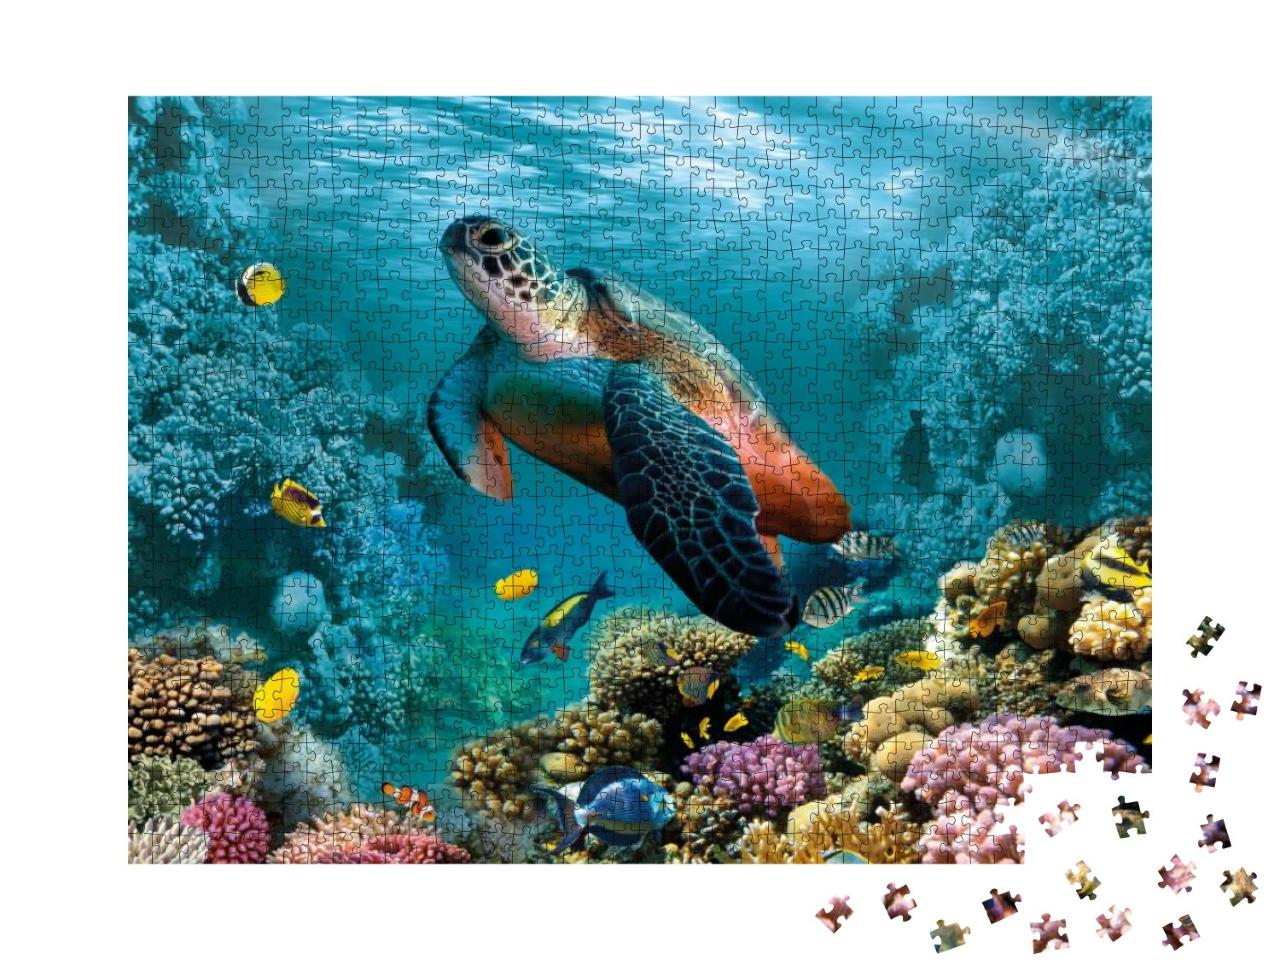 Puzzle 1000 Teile „Unterwasserwelt mit einer Schildkröte und Korallen“